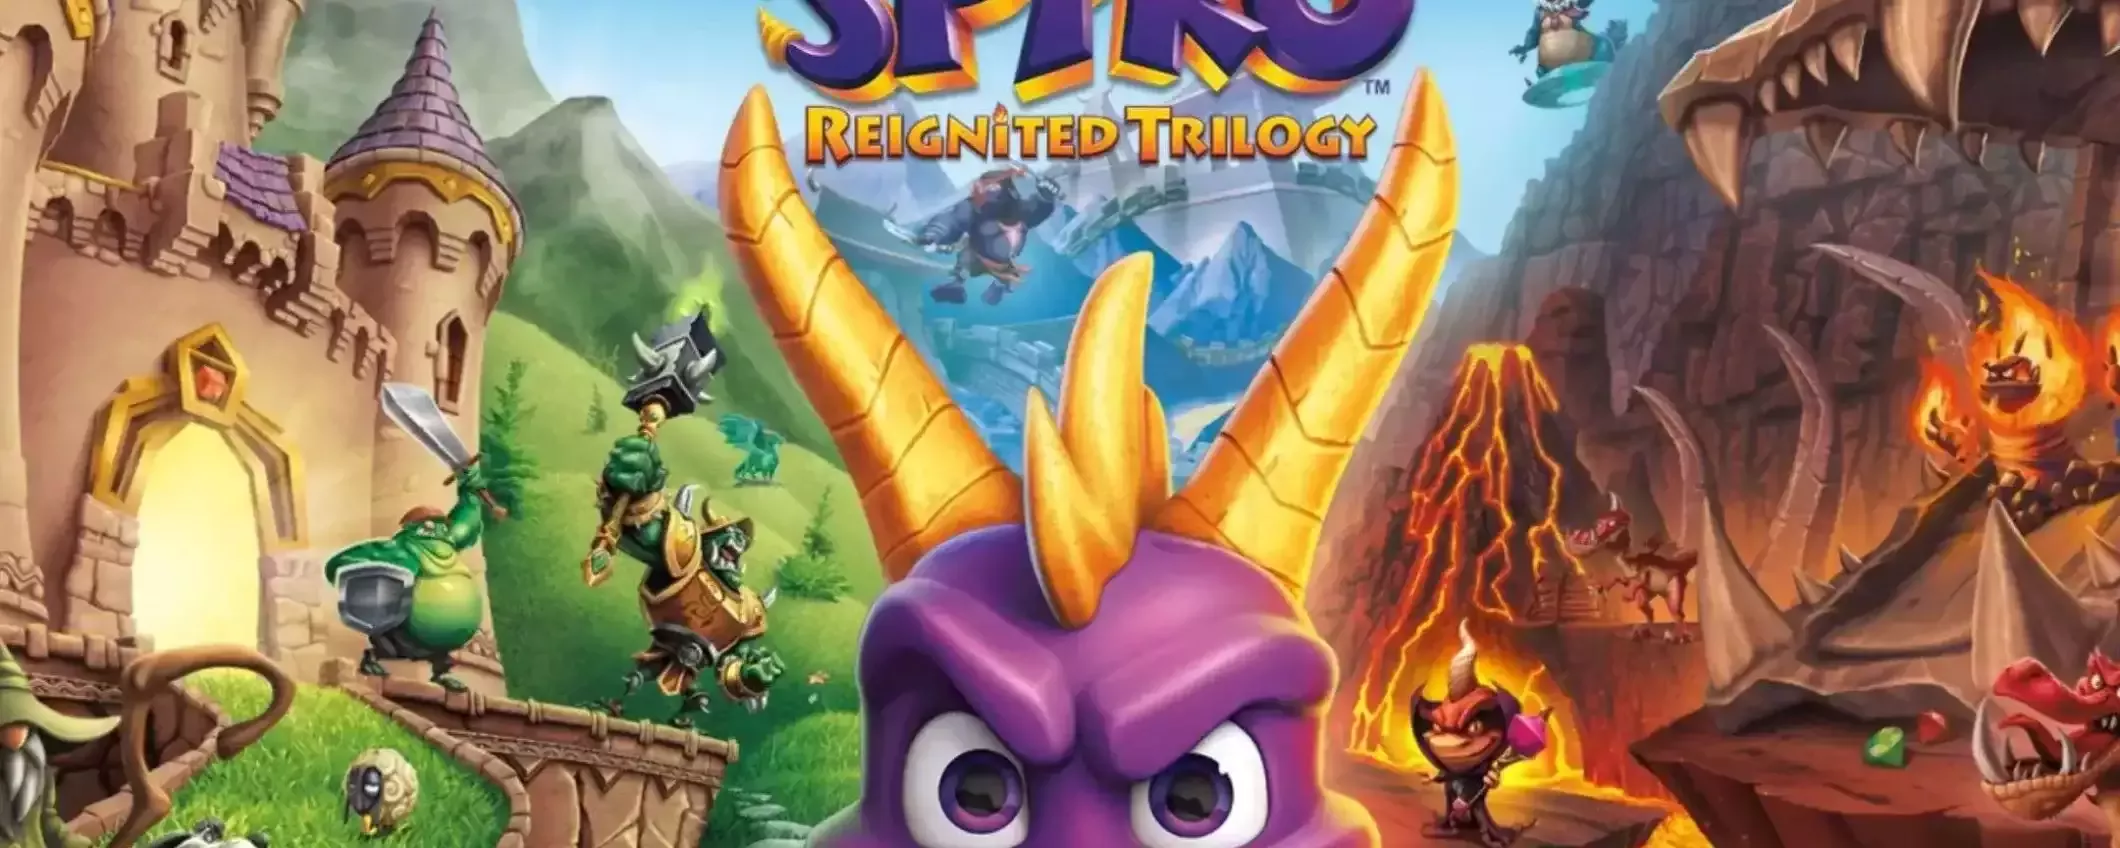 Spyro Reignited Trilogy per Nintendo Switch ad un prezzo INCREDIBILE